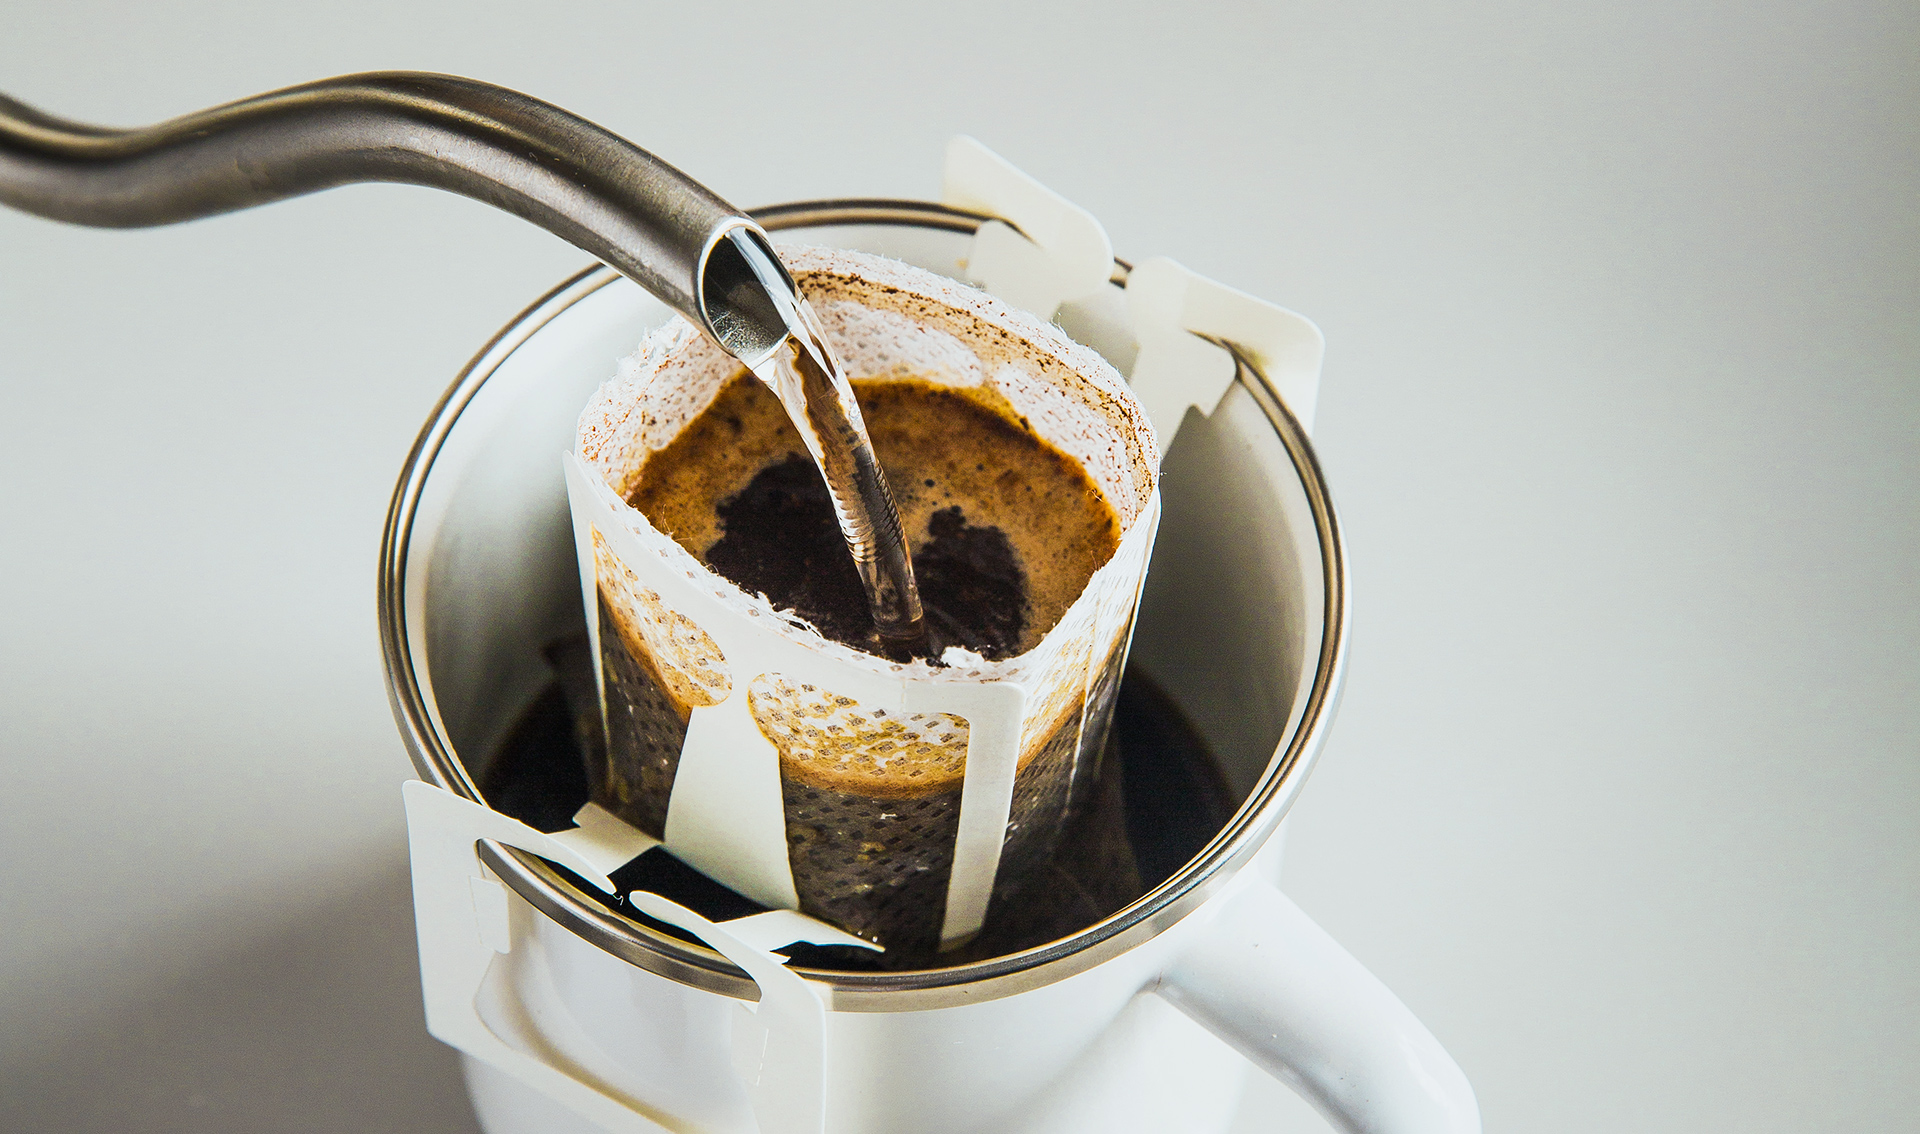 evde makinesiz filtre kahve yapimi ile ilgili bilmeniz gereken tum bilgiler